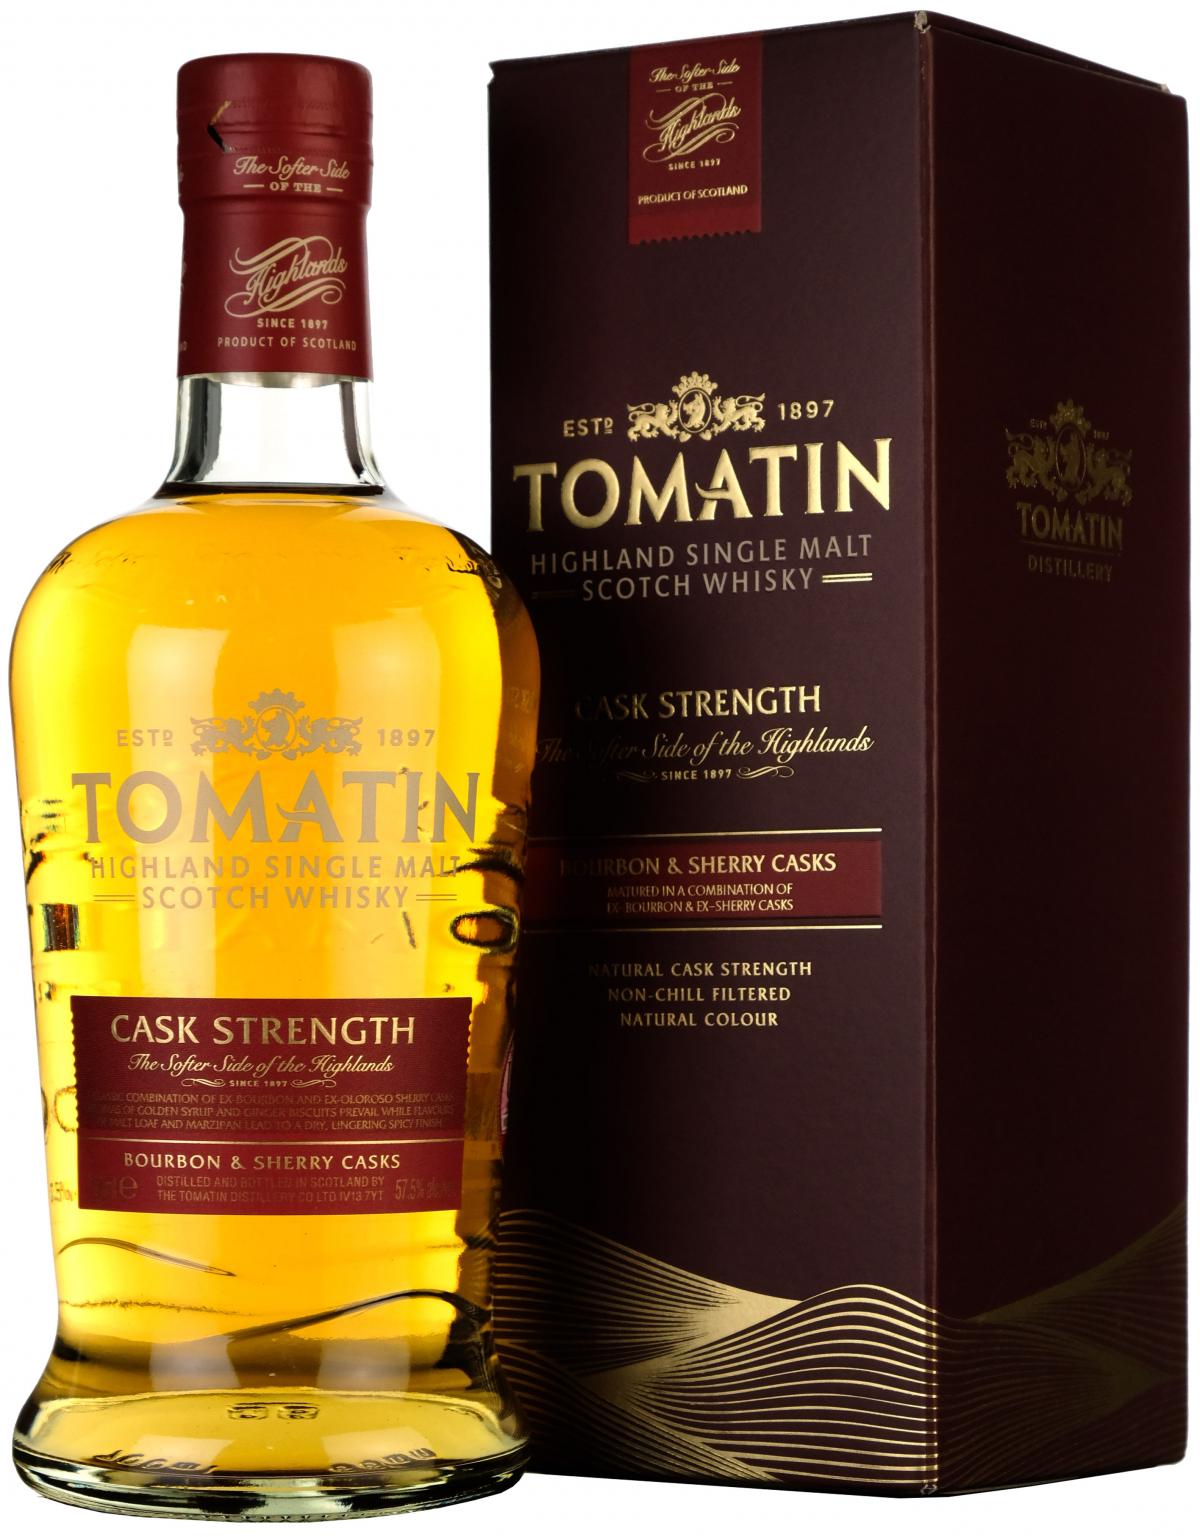 tomatin cask strength, highland single malt scotch whisky